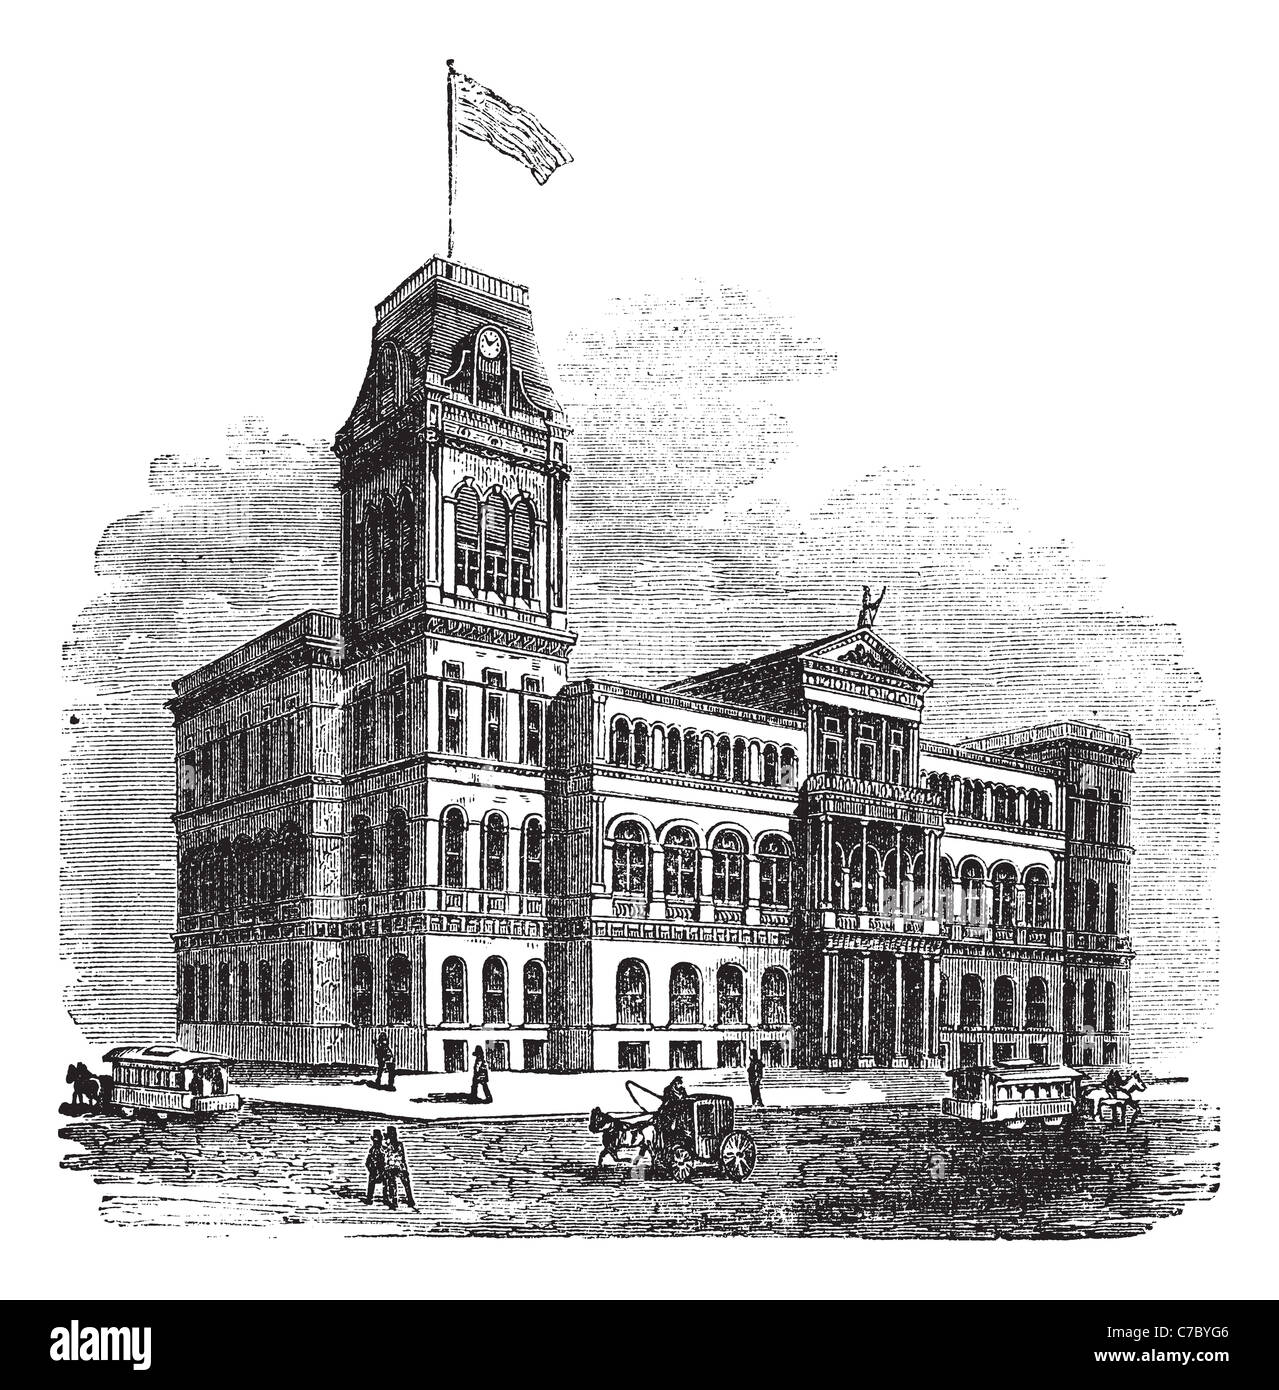 L'Hôtel de ville de Louisville de Louisville, Kentucky, United States, durant les années 1890, gravure d'époque. Banque D'Images